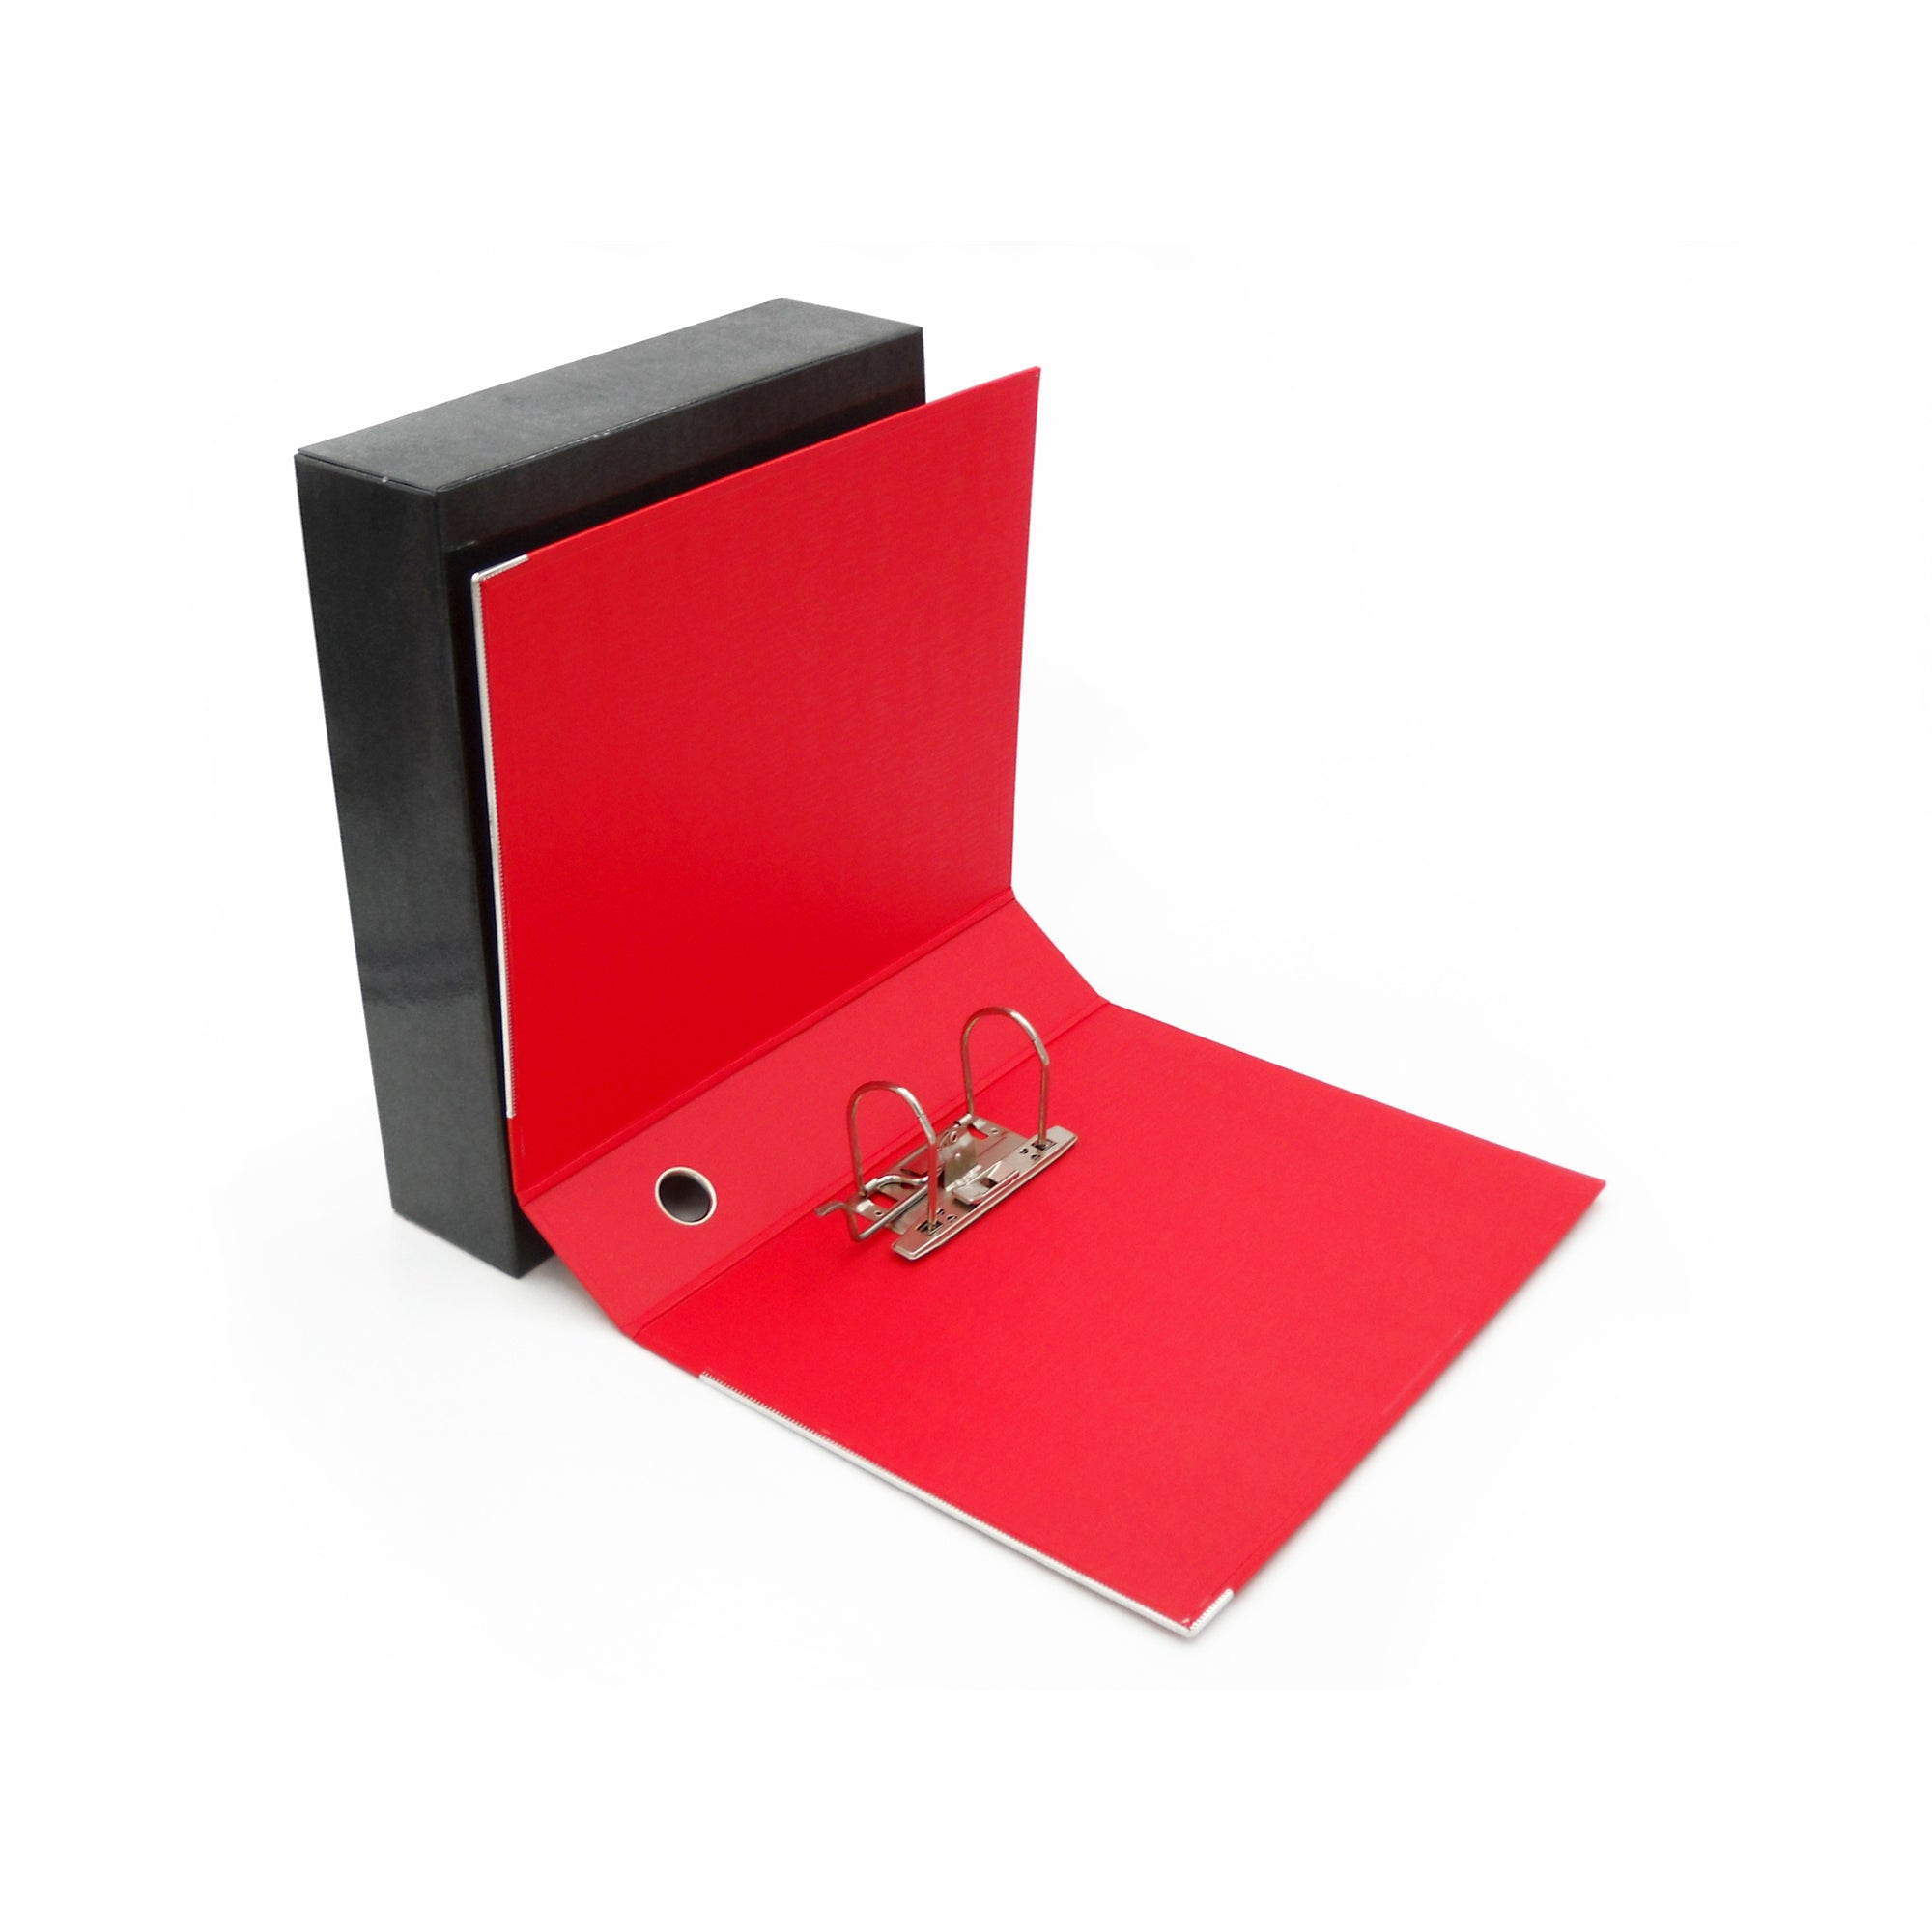 starline-registratore-kingbox-f-to-protocollo-dorso-8cm-rosso